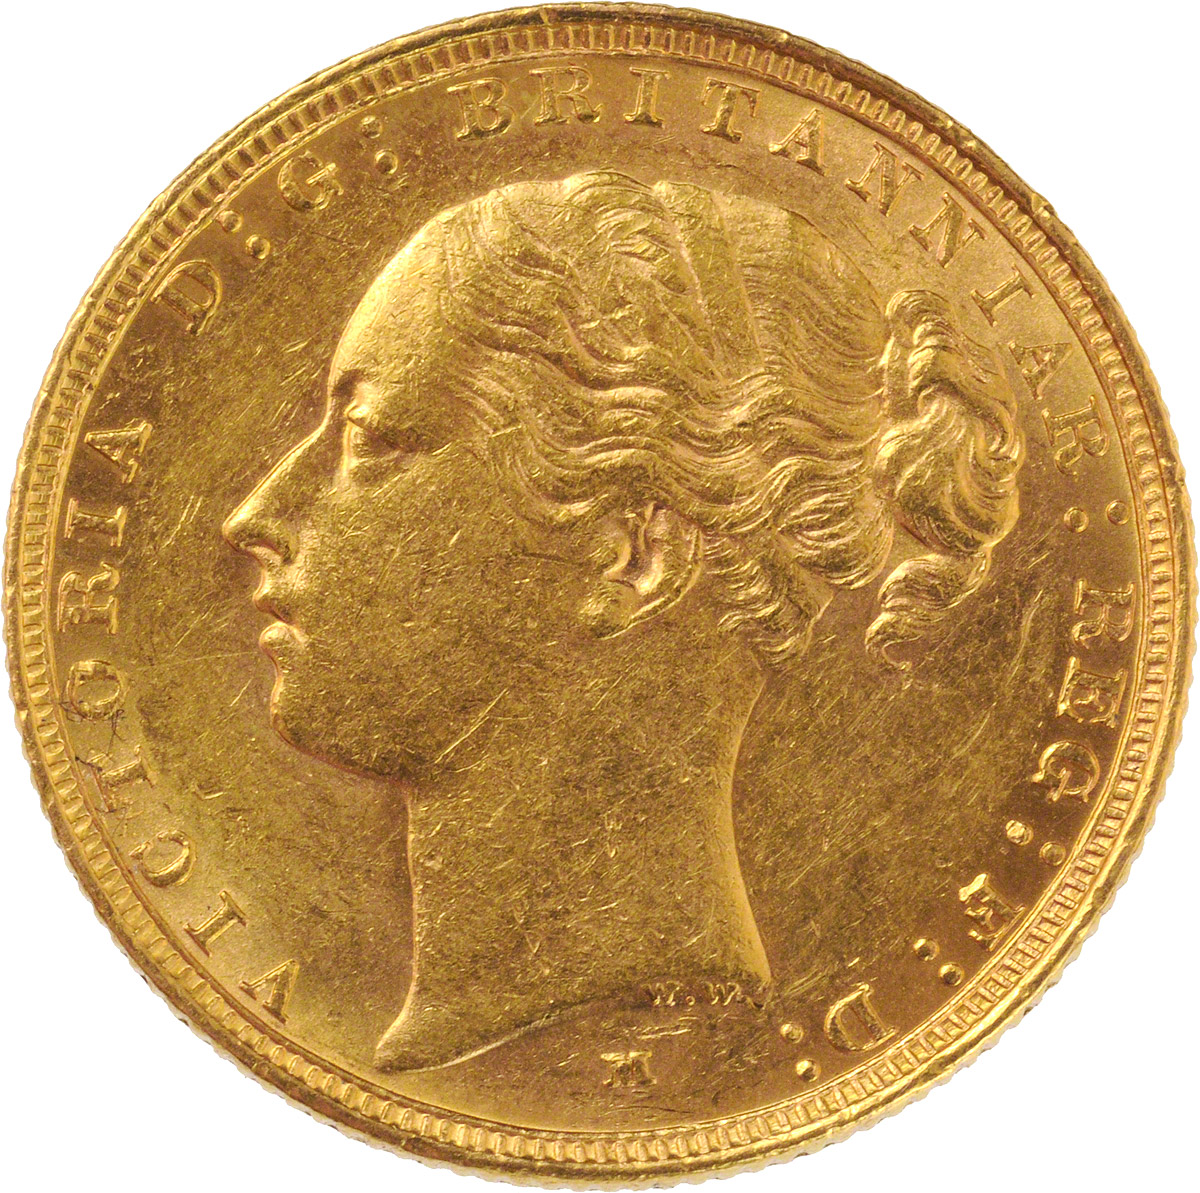 1886 Βικτώρια (Νομισματοκοπείο Μελβούρνης)